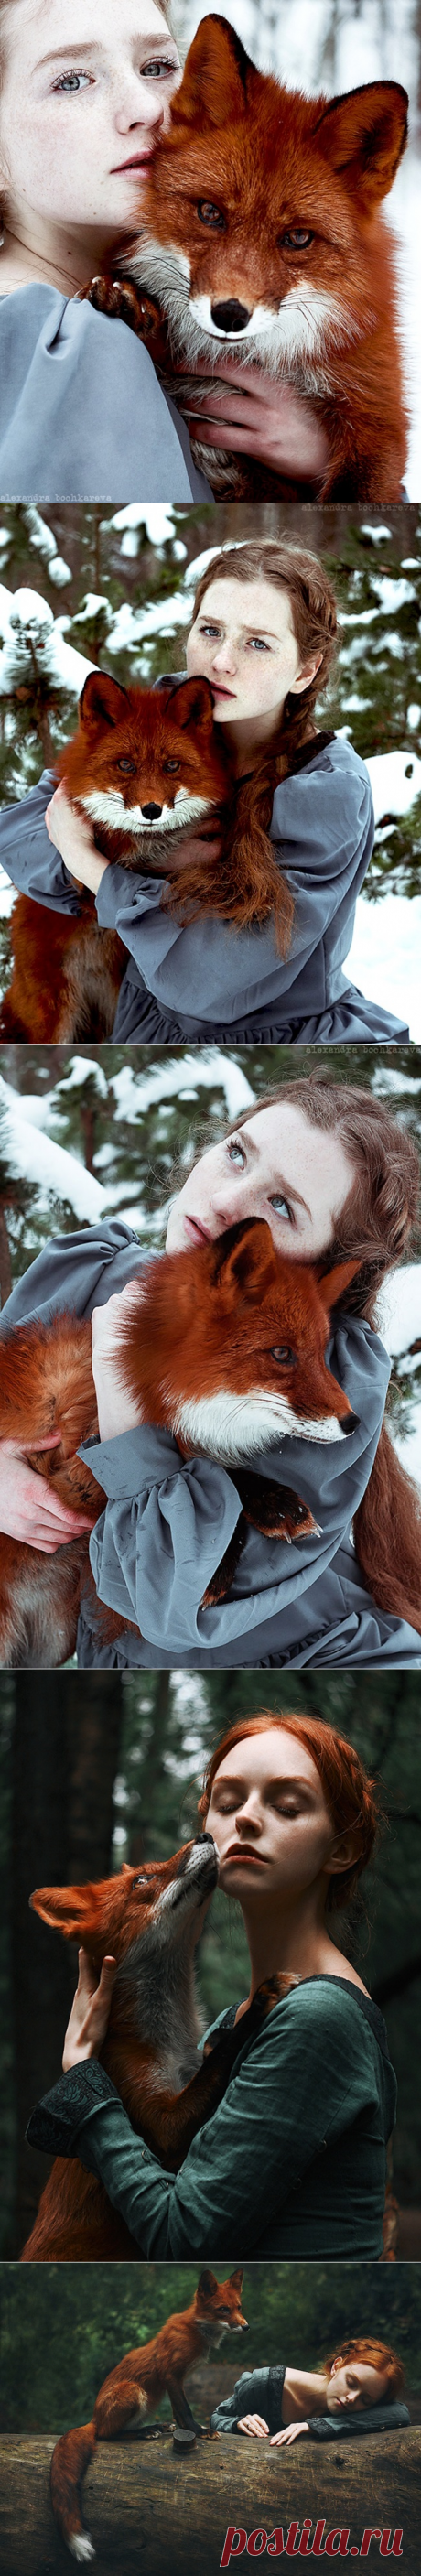 Гипнотические портреты рыжеволосых красавиц и диких лис в зимнем лесу